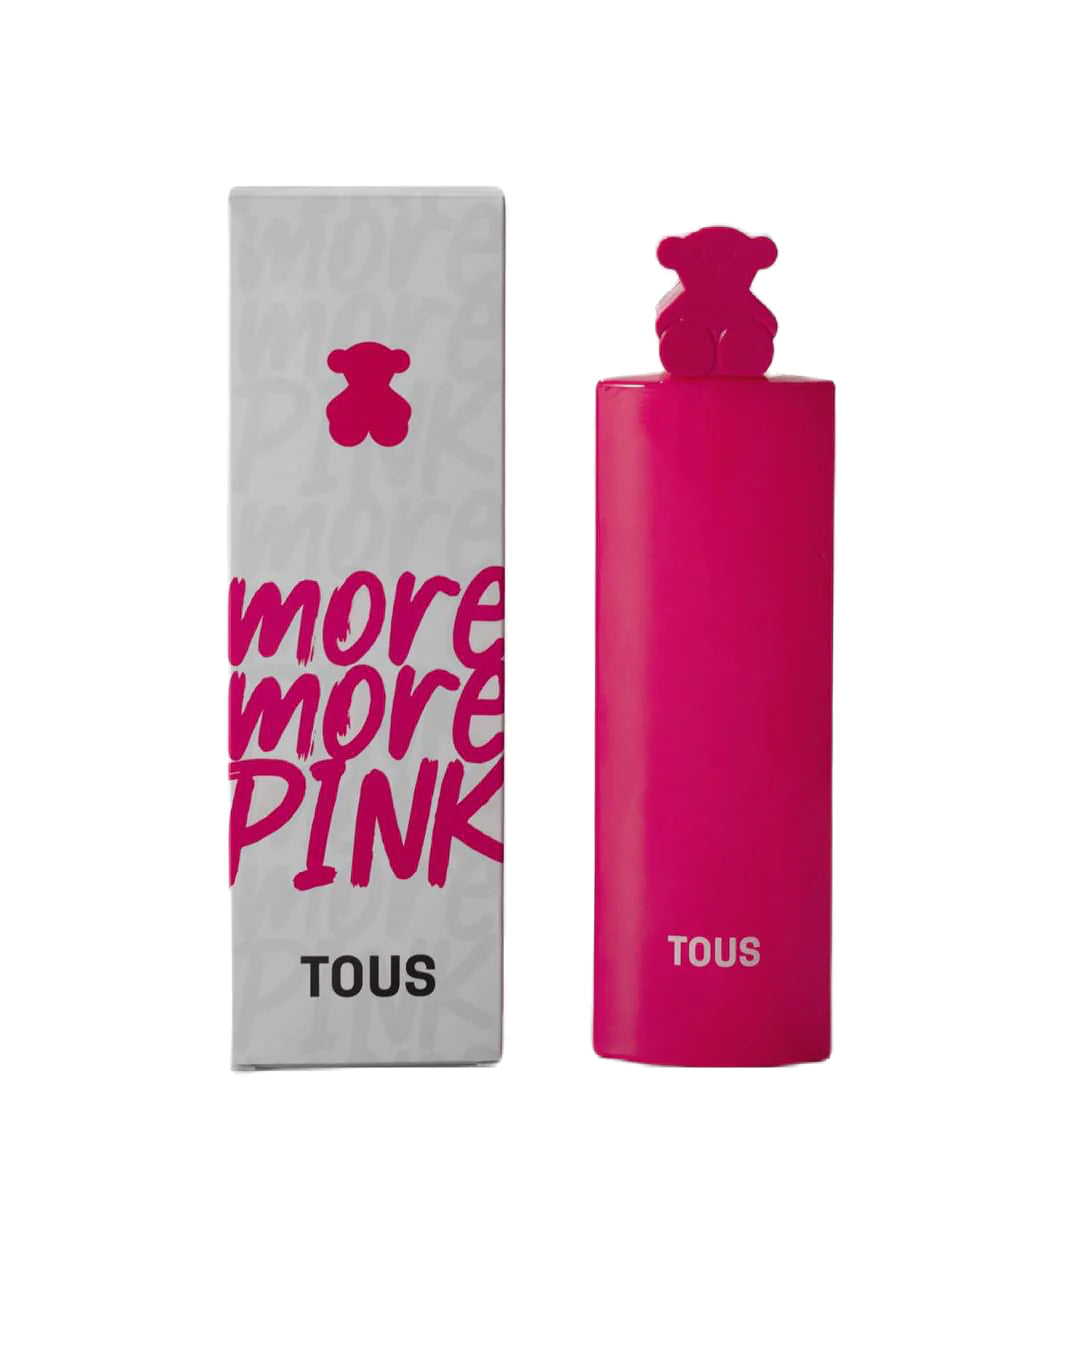 More More Pink by Tous Eau de Toilette 3.0oz